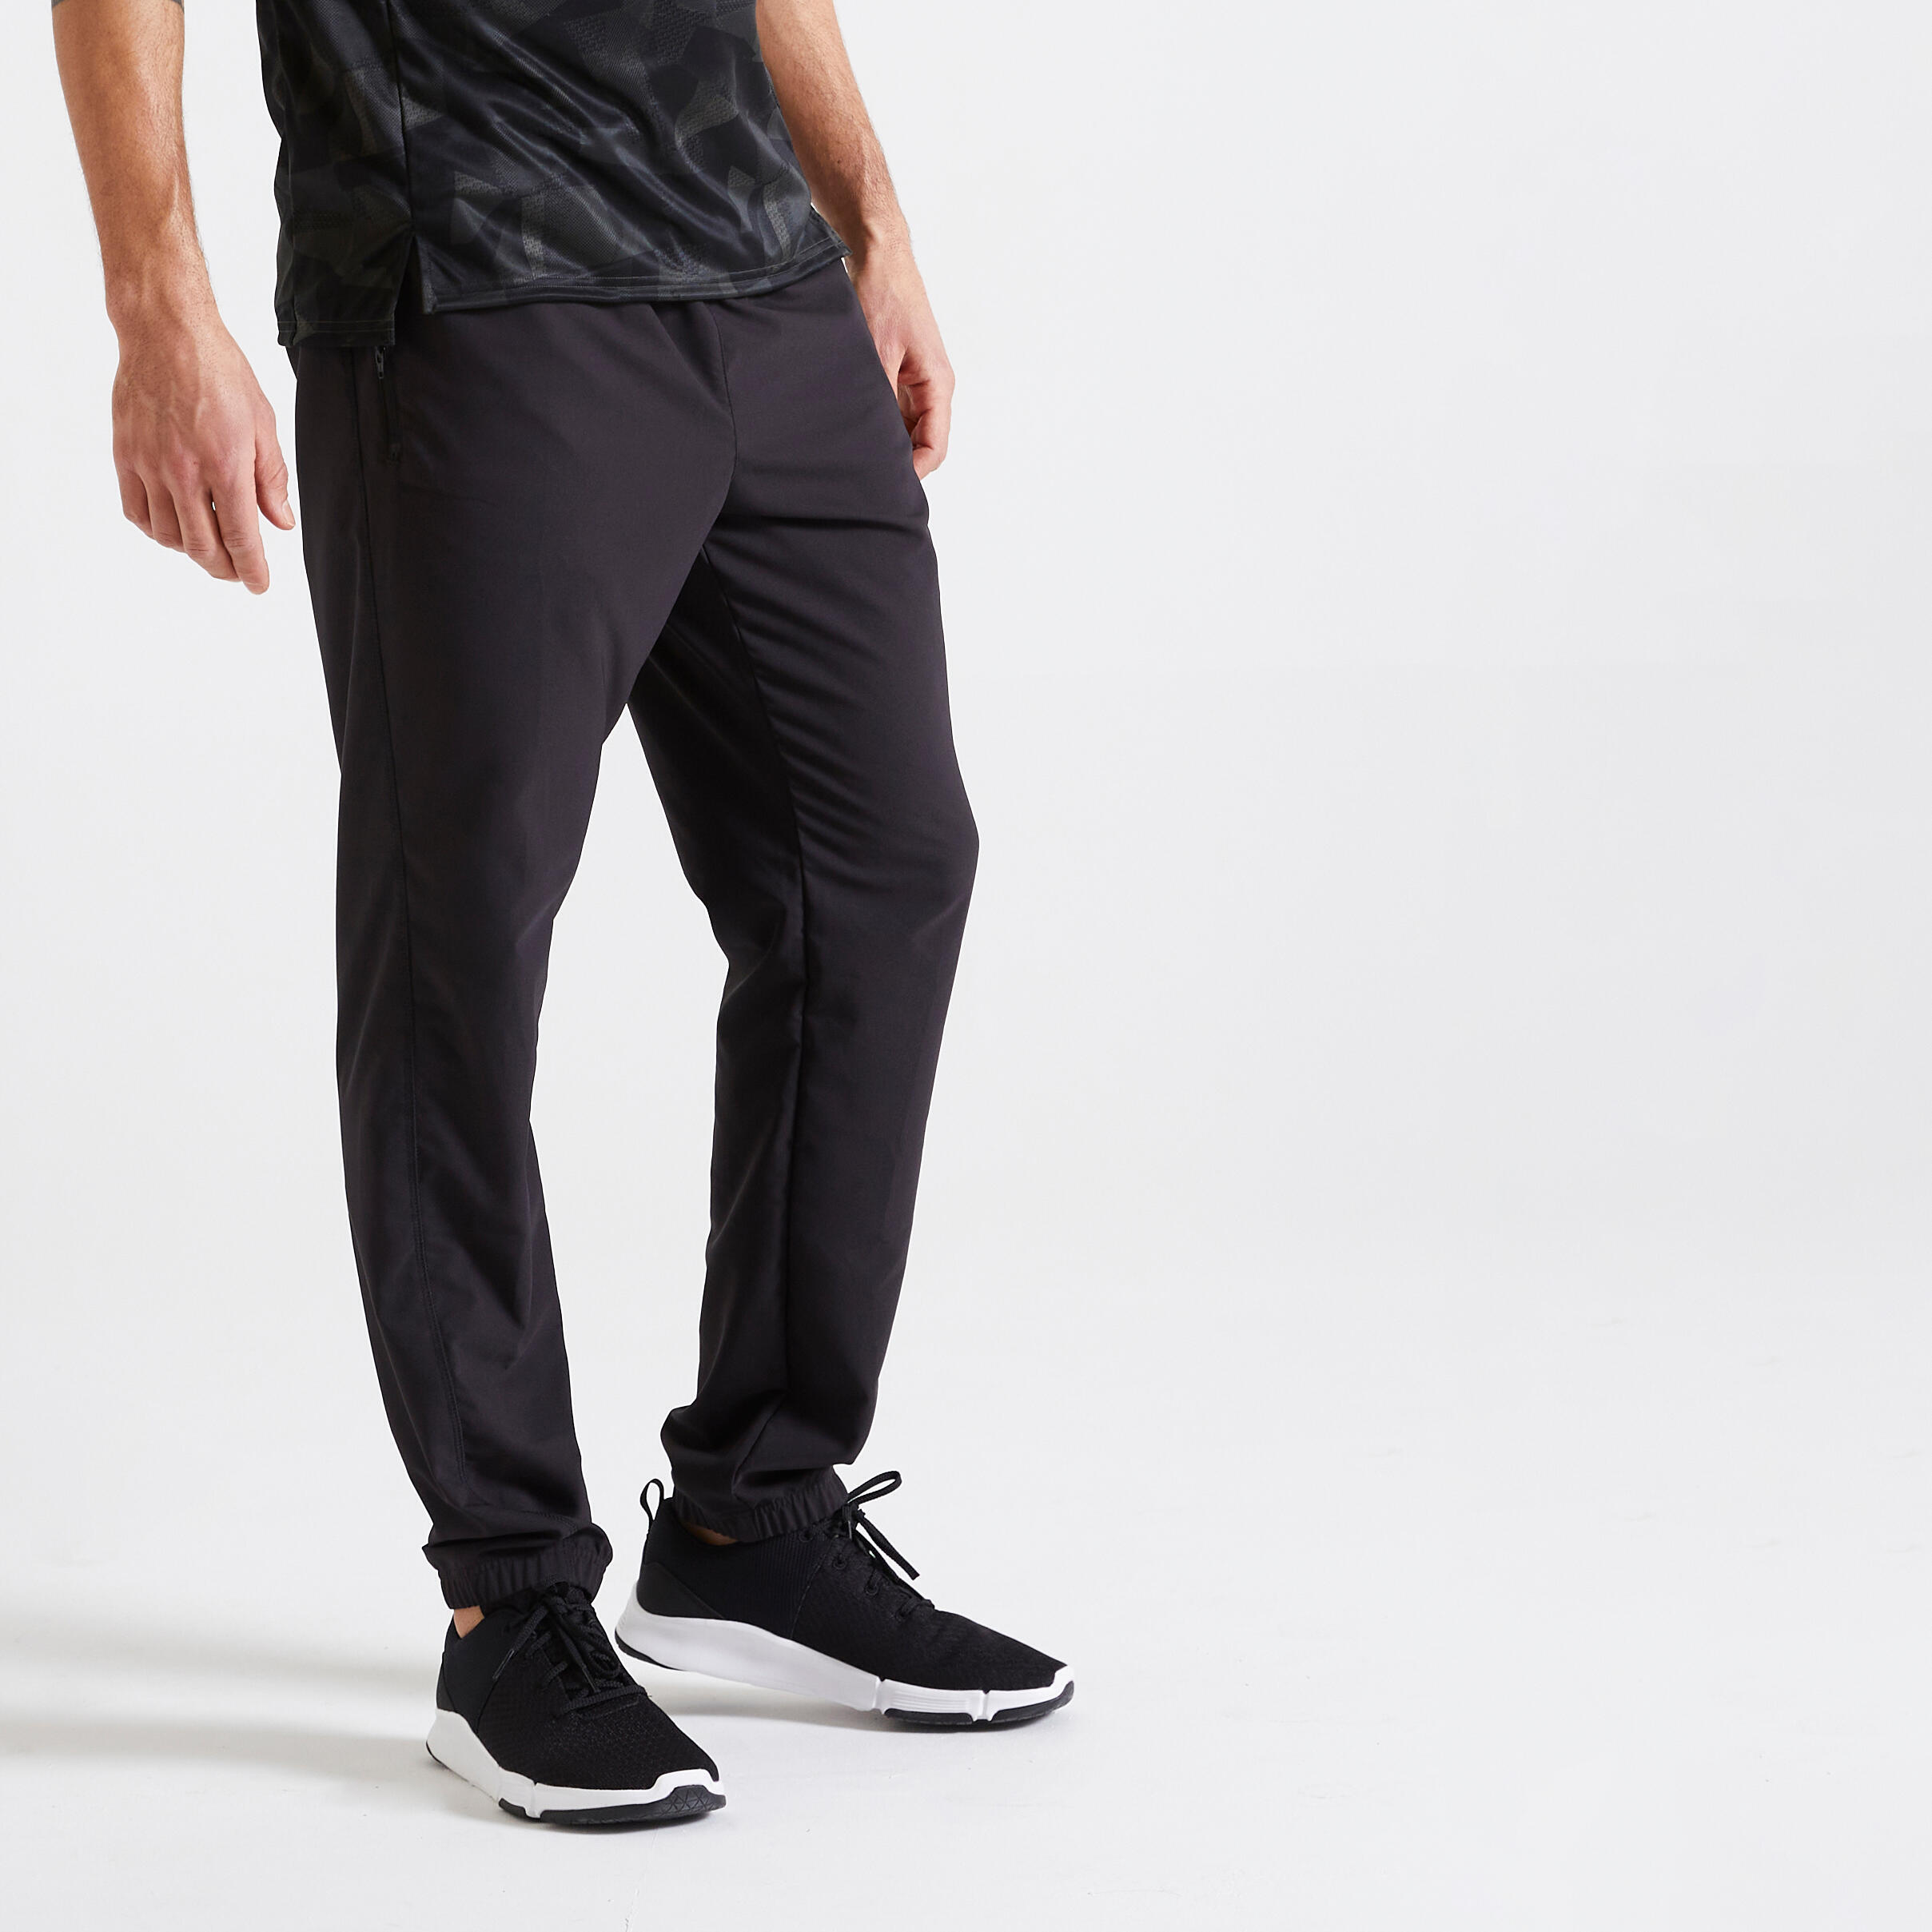 Тренировочные штаны для фитнеса дышащие обычные мужские черные DOMYOS, черный фото